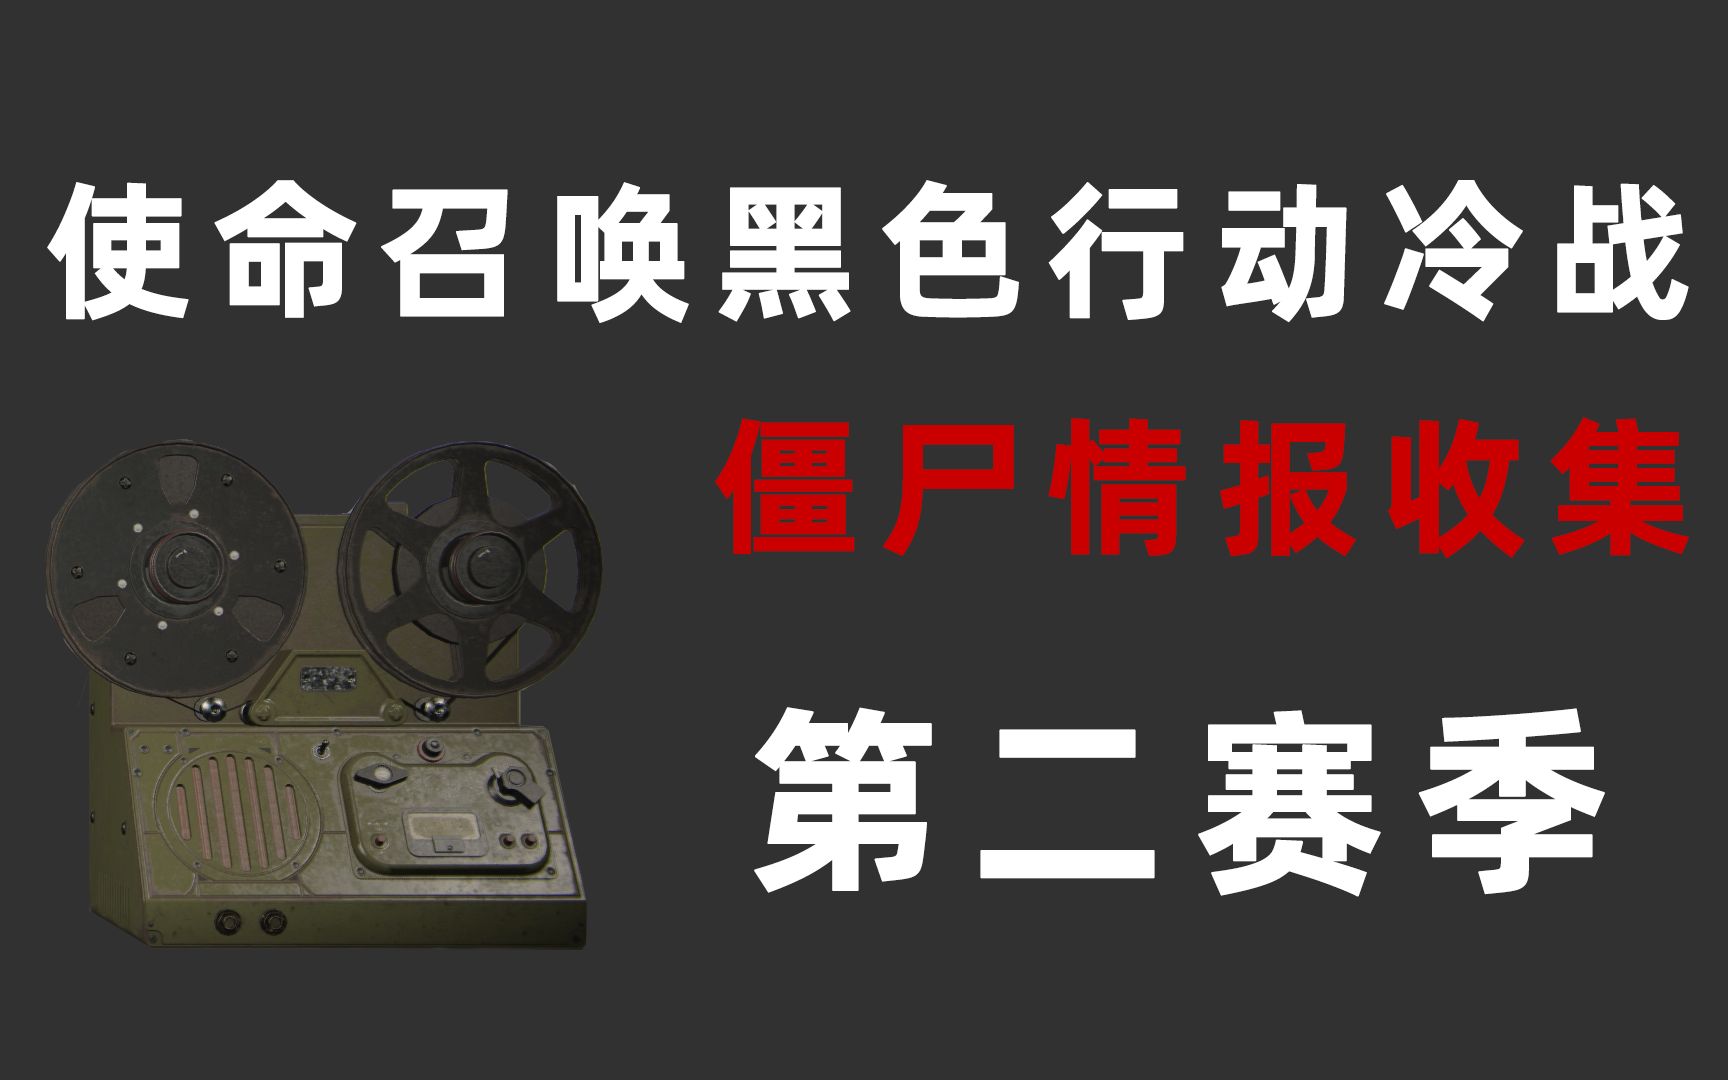 《使命召唤15》简体中文官网上线售价1834新台币